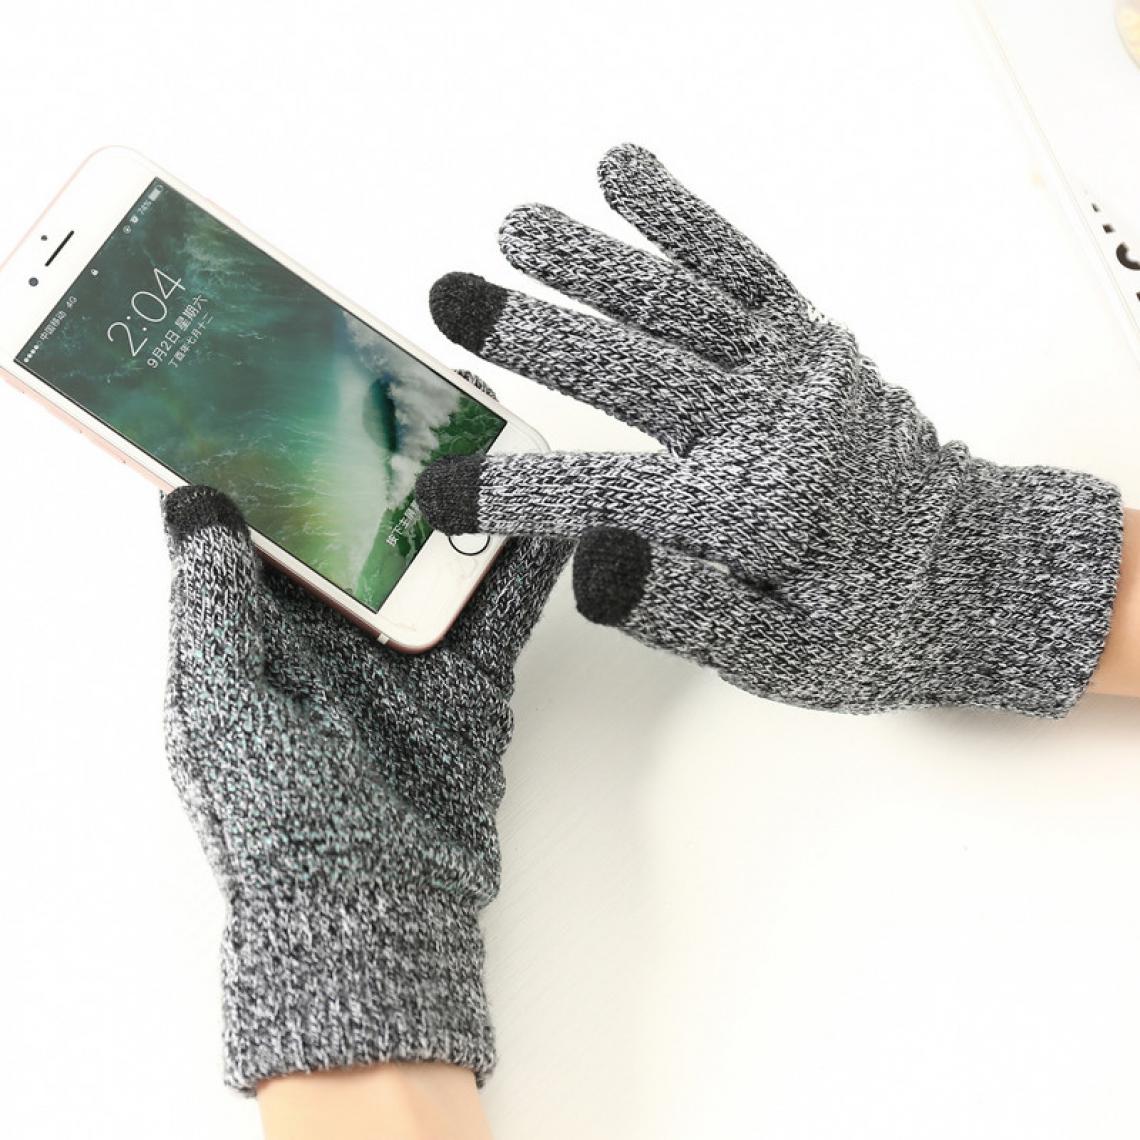 Shot - Gants Homme tactiles pour SAMSUNG Galaxy S9 + Smartphone Taille M 3 doigts Hiver (NOIR) - Autres accessoires smartphone